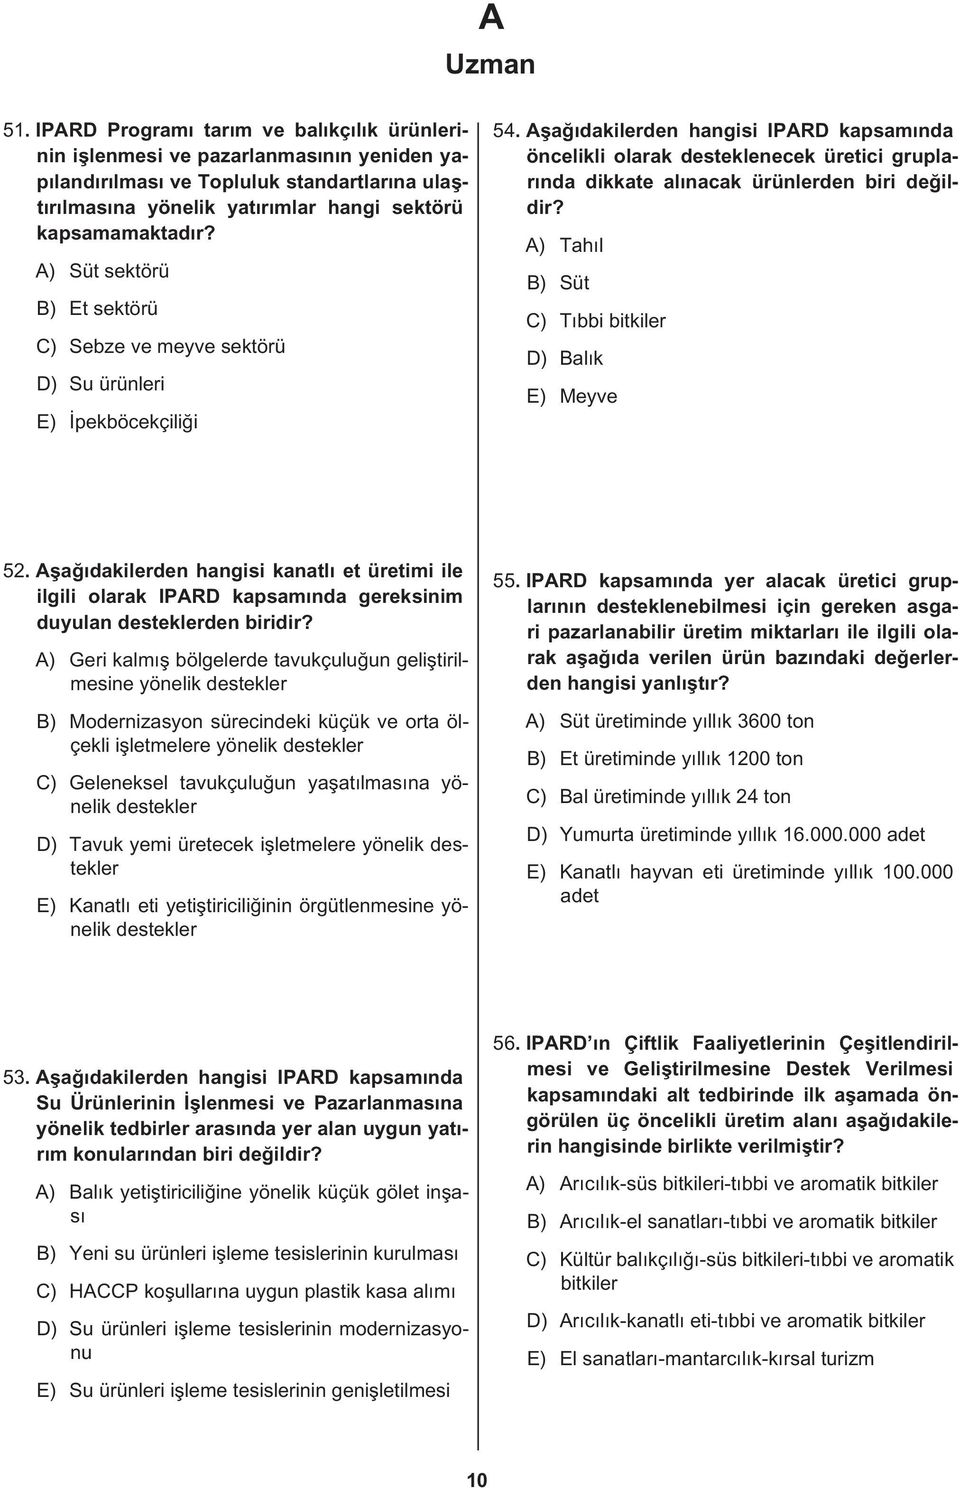 Aşağıdakilerden hangisi IPARD kapsamında öncelikli olarak desteklenecek üretici gruplarında dikkate alınacak ürünlerden biri A) Tahıl B) Süt C) Tıbbi bitkiler D) Balık E) Meyve 52.